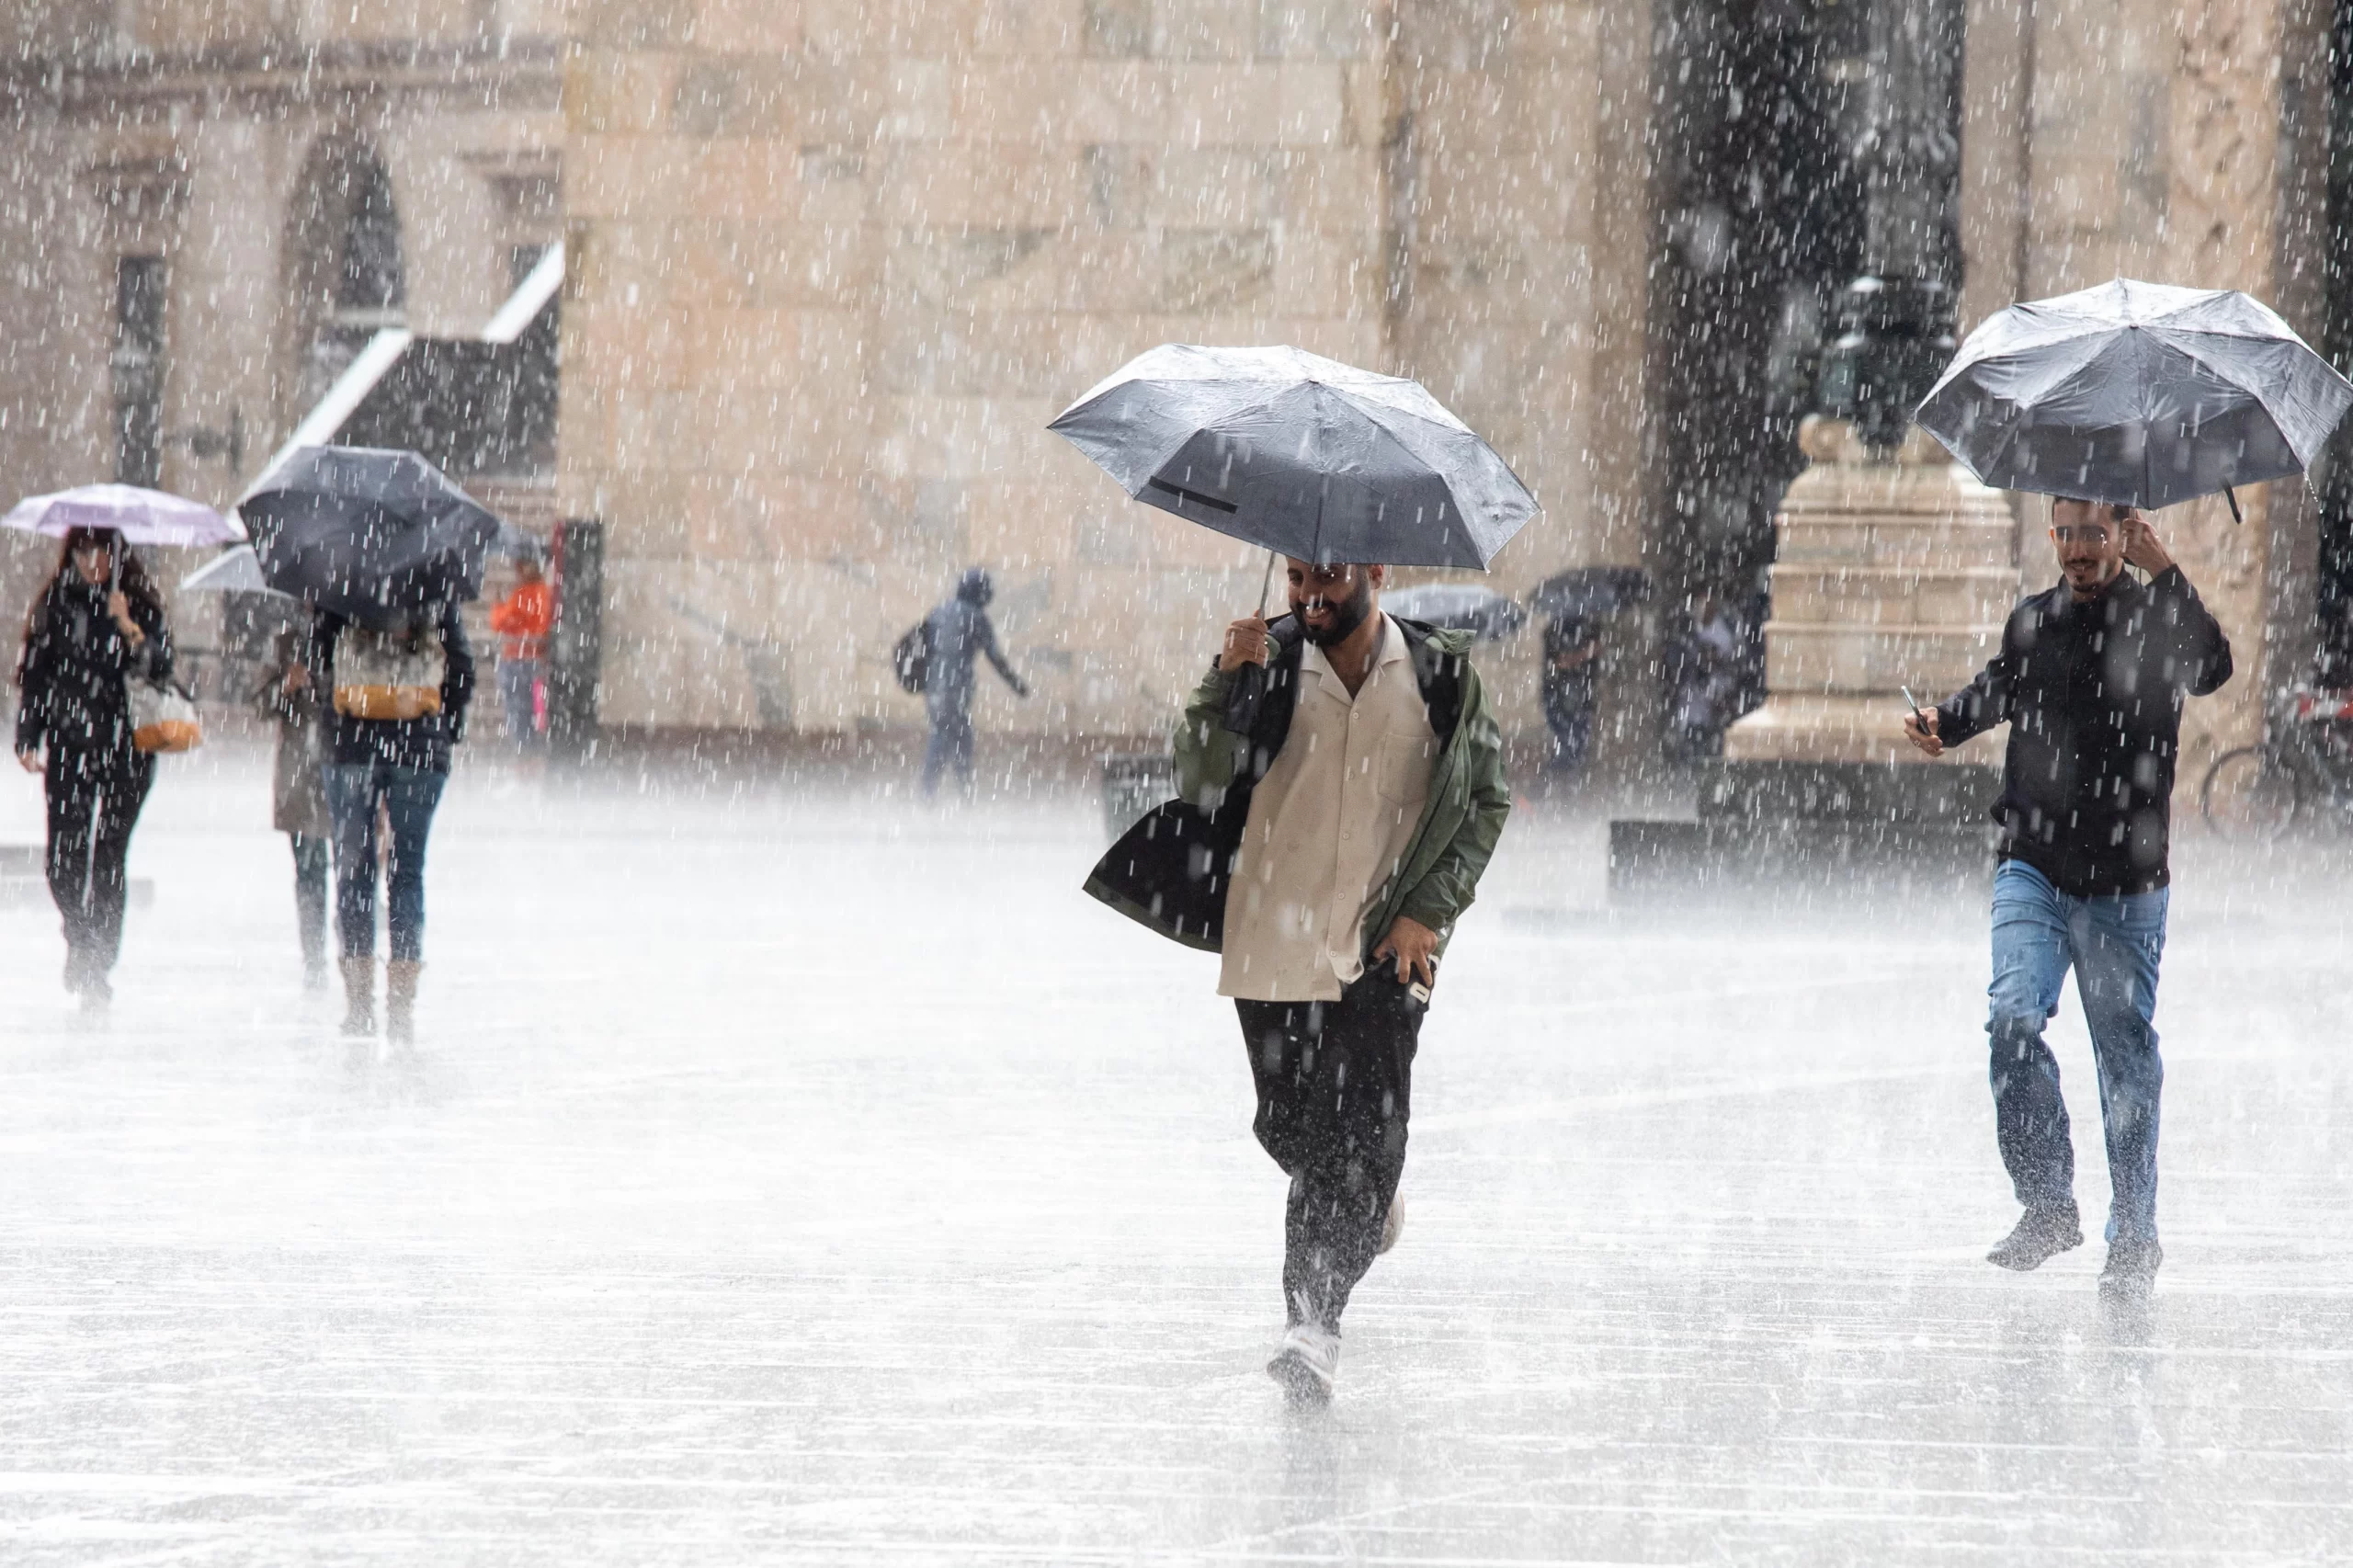 FOGGIA - Due giorni di pioggia sull'Italia in un quadro meteo che oggi e domani cambia rispetto al weekend appena trascorso. Dal caldo anomalo alla grandine (anche neve sulle Alpi), poi sarà di nuovo anticiclone africano con un mese di aprile travestito da giugno.